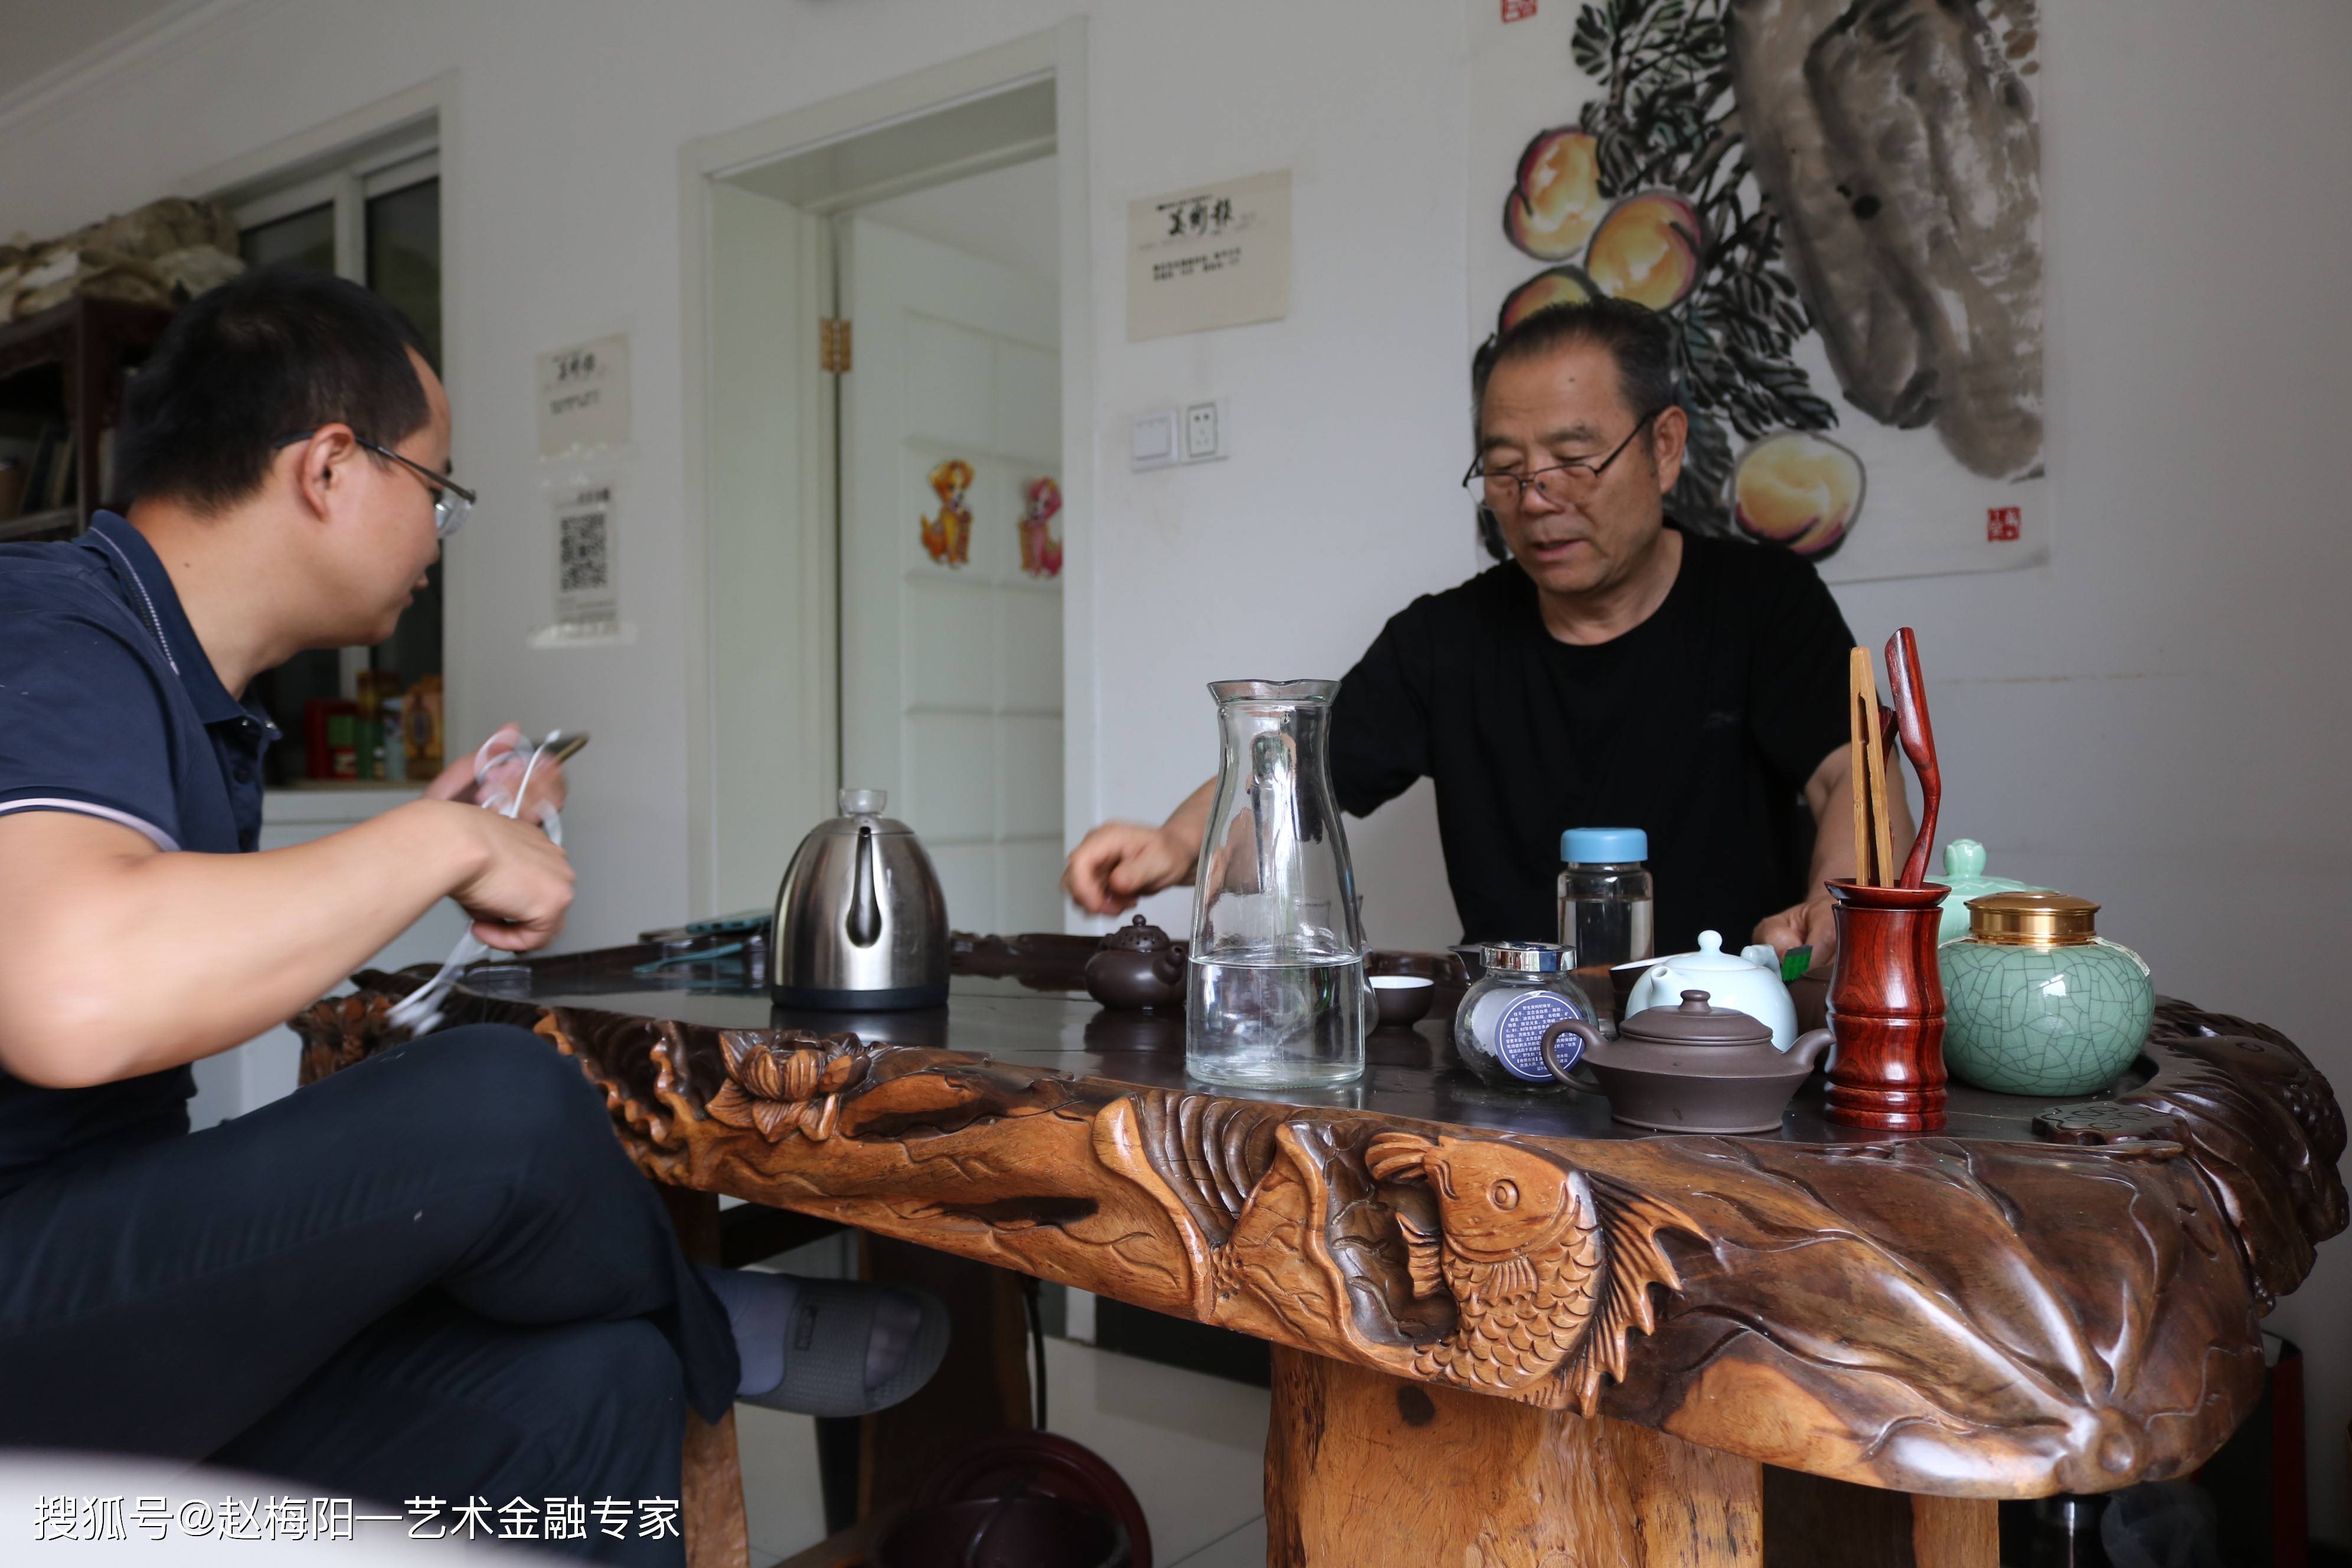 2020年6月13日,前往北京延庆,拜访书画大家鲁石,与退居二线的首长喝茶